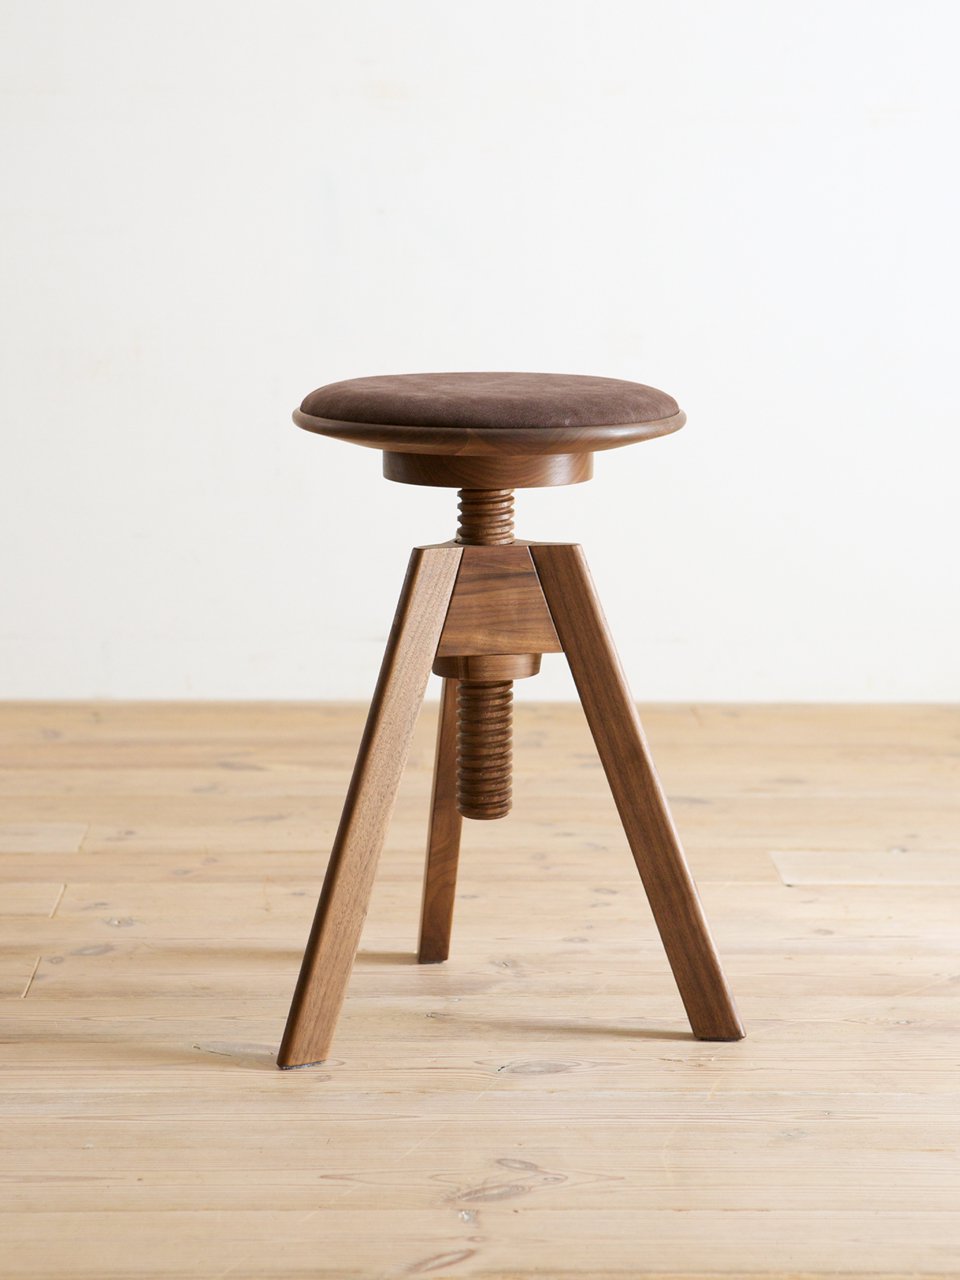 広松木工 スピンスツール 回転 昇降 テーブルサイドテーブル